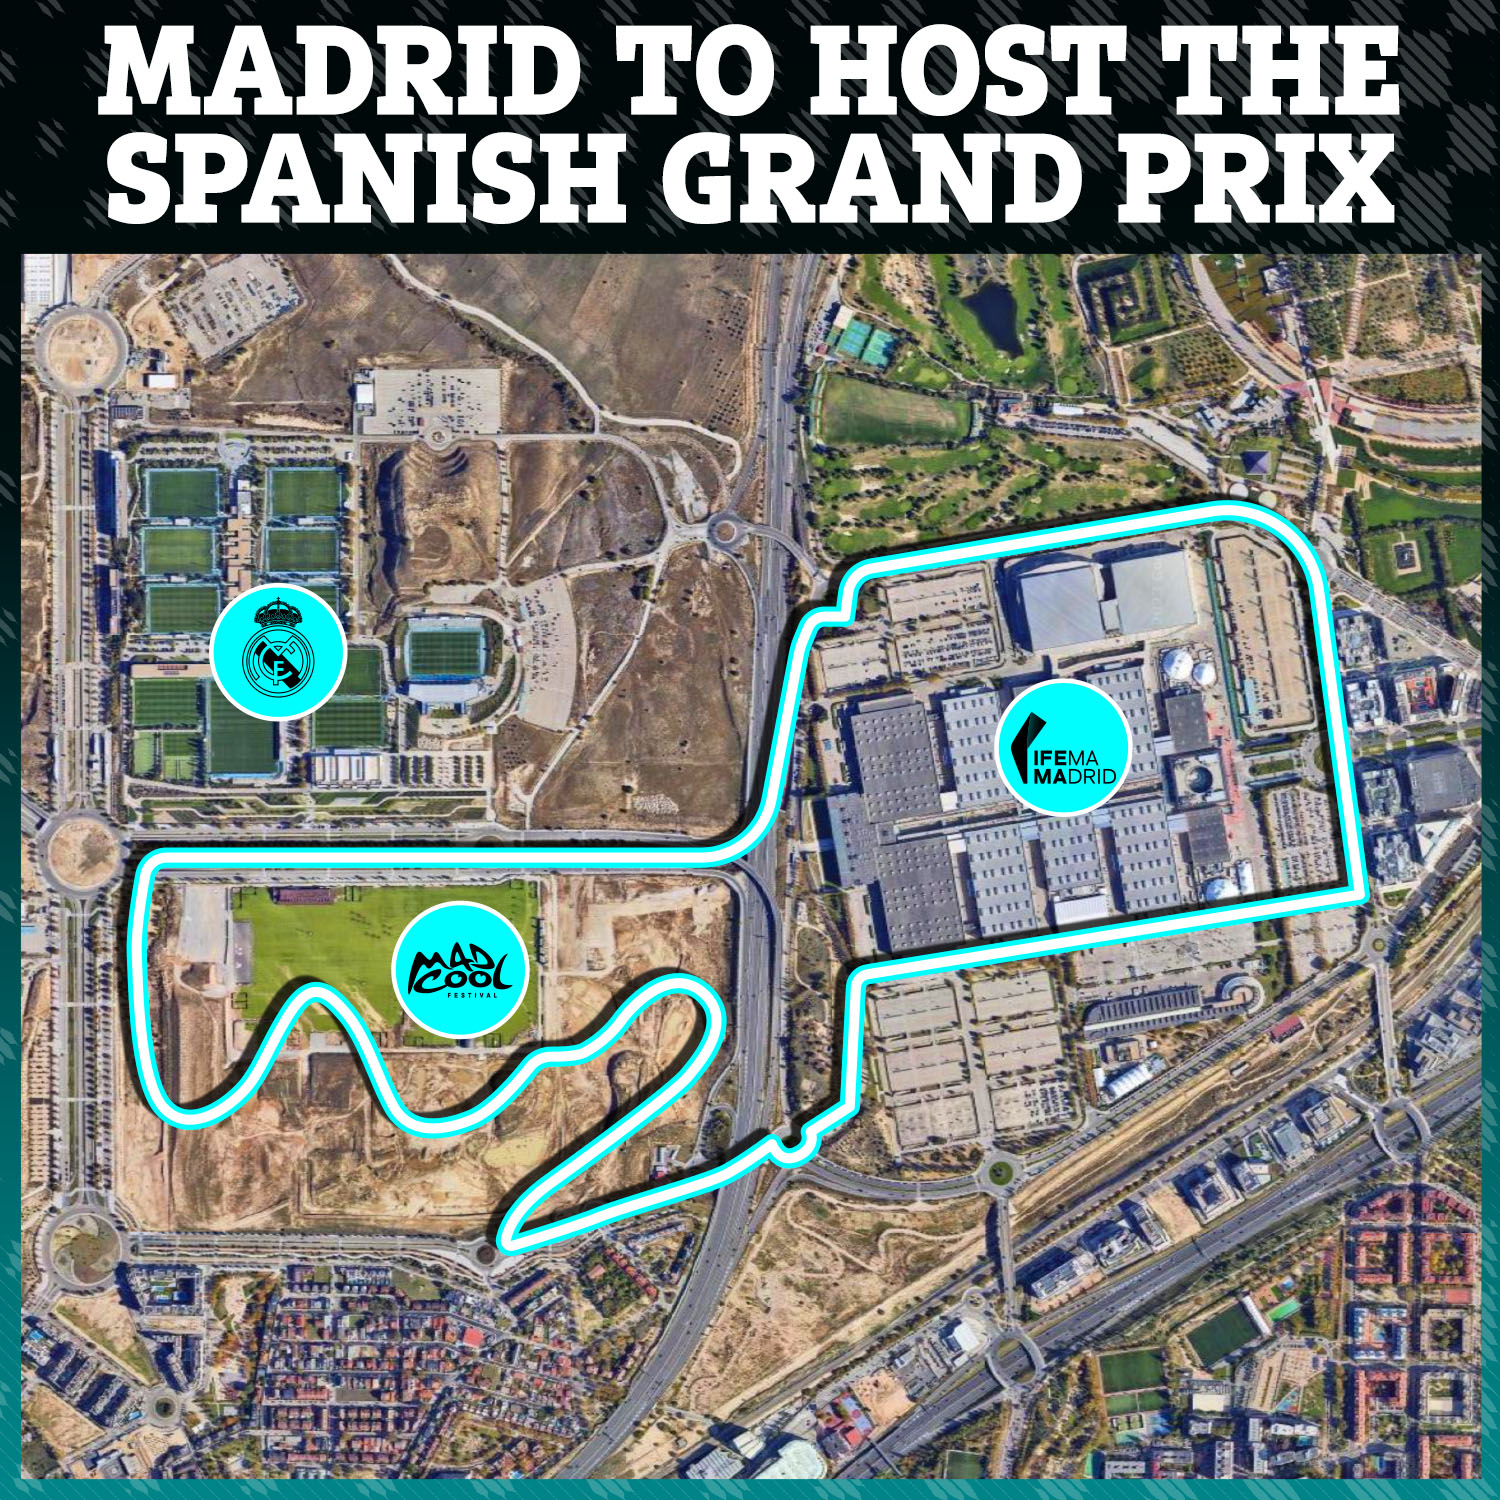 Wie die neue Rennstrecke in Madrid aussehen könnte